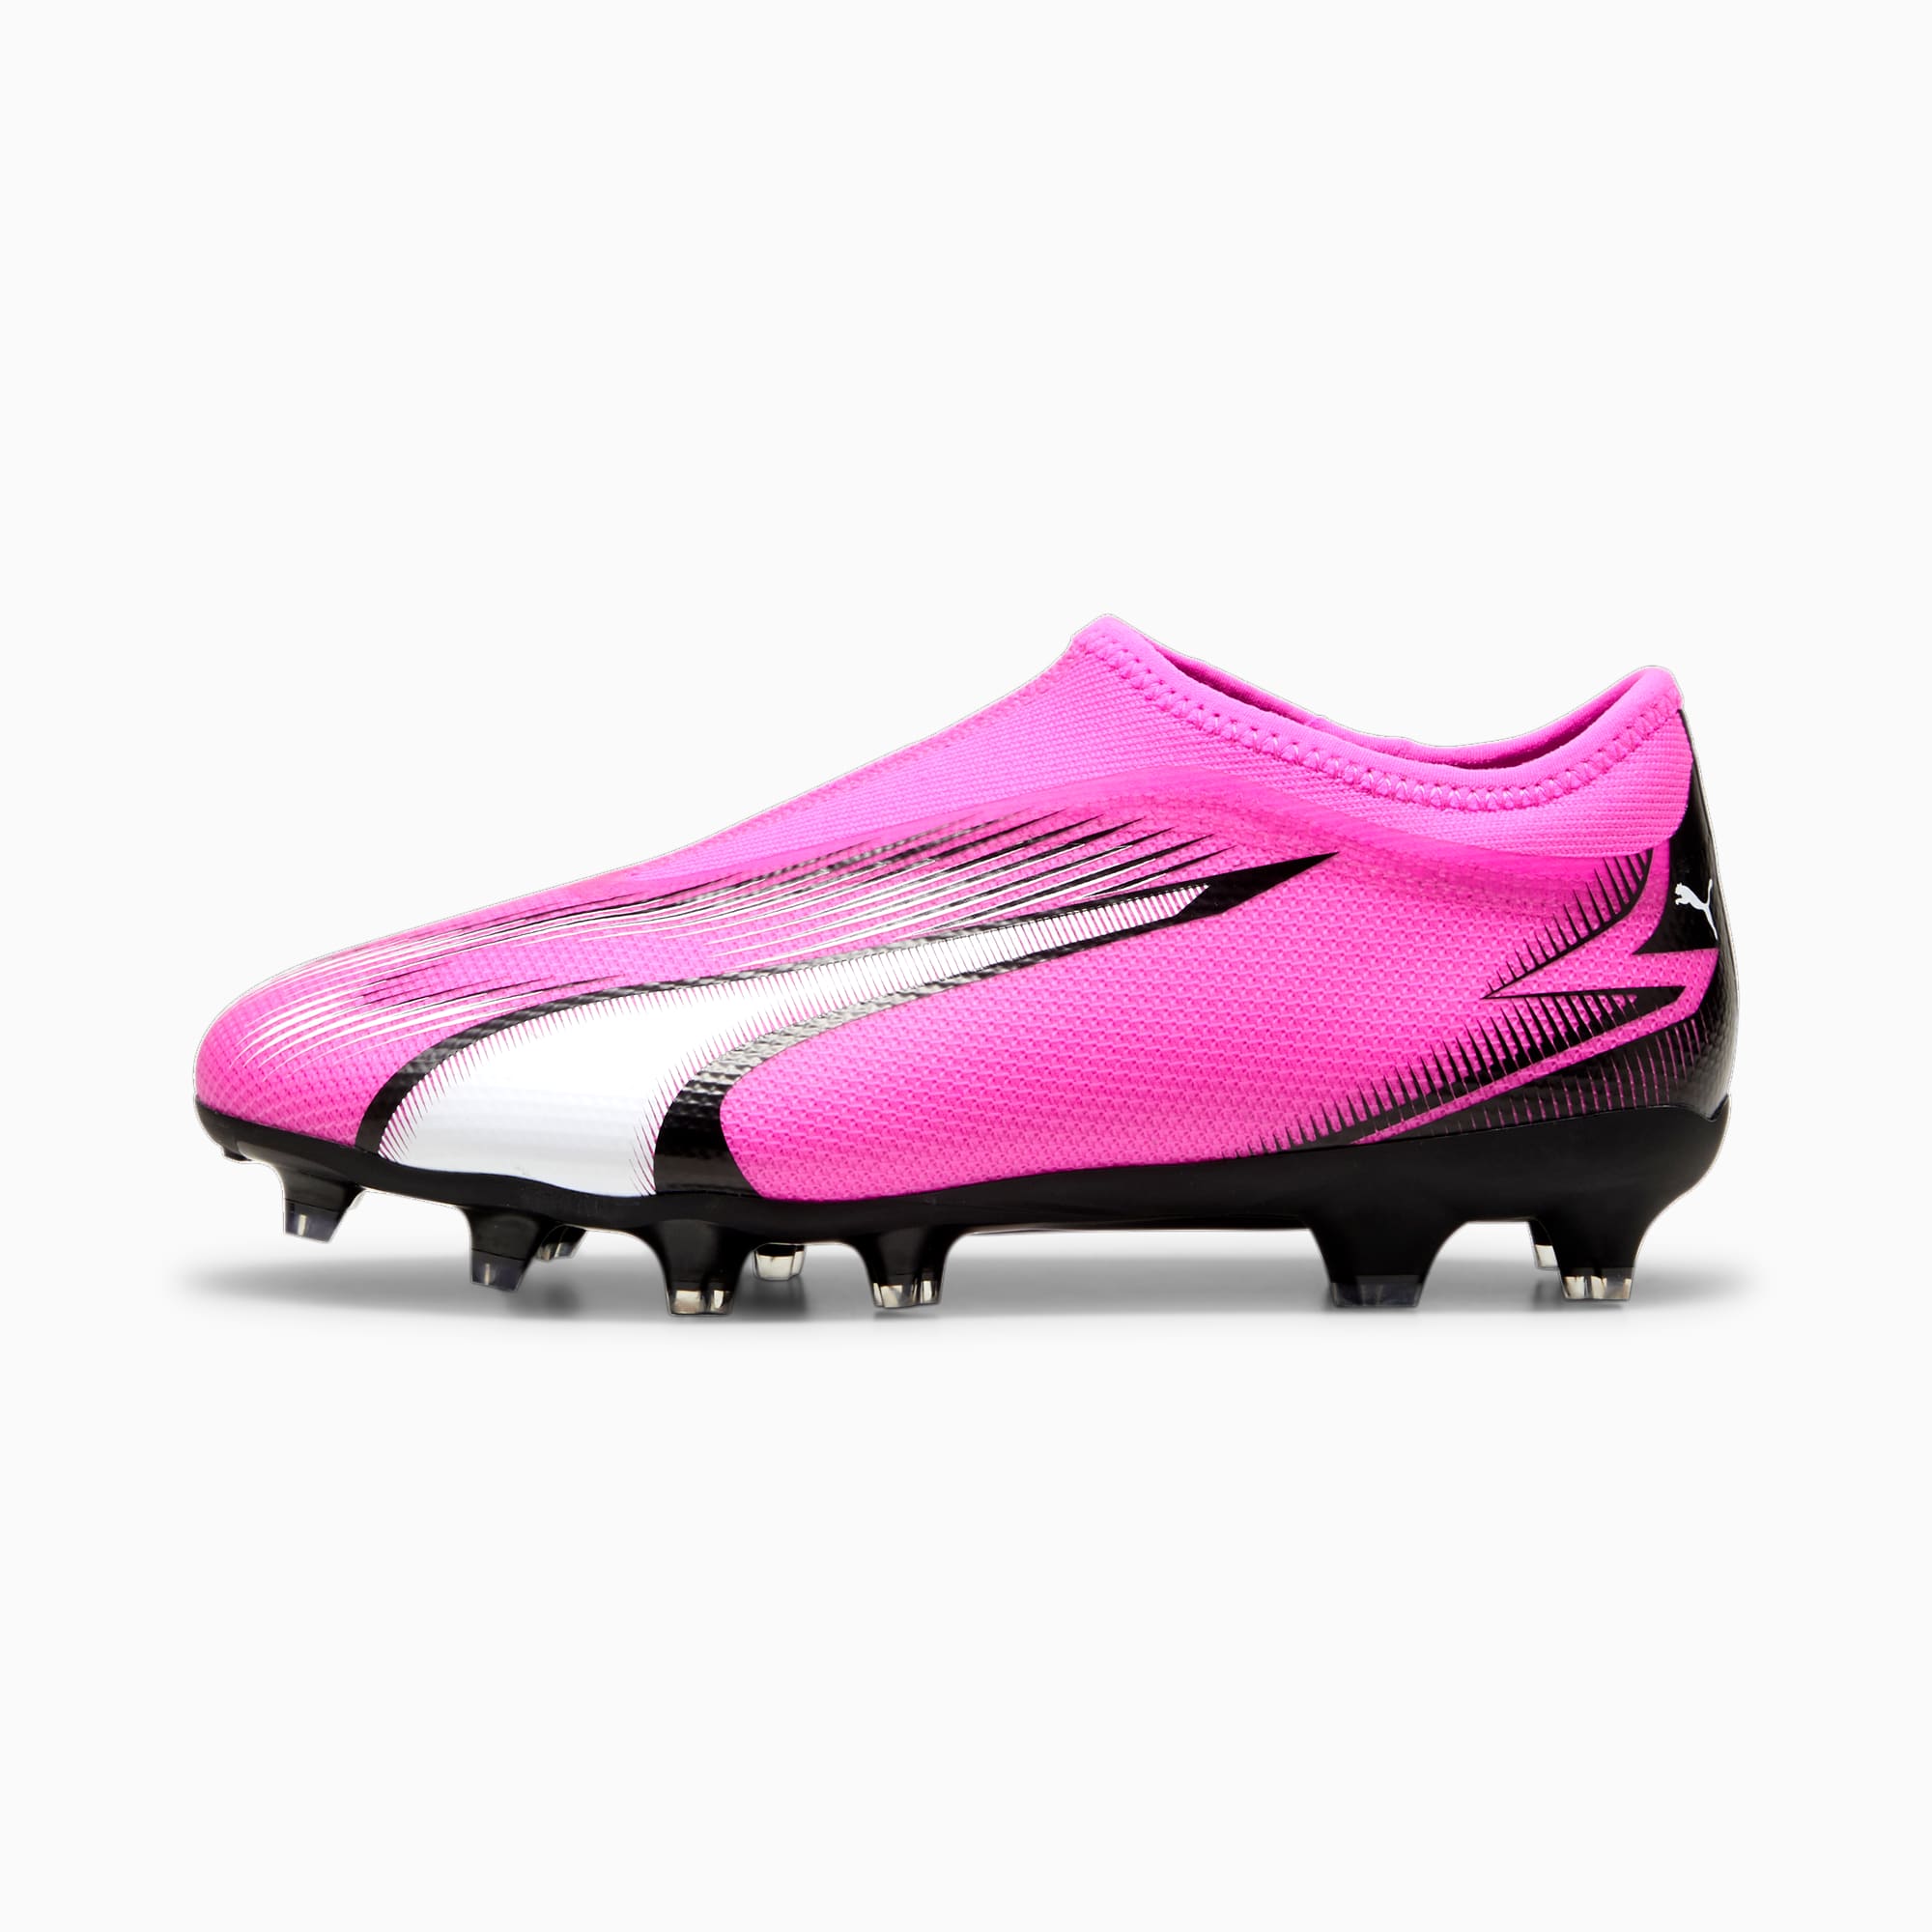 PUMA ULTRA MATCH FG/AG voetbalschoenen zonder veters, Roze/Zwart/Wit